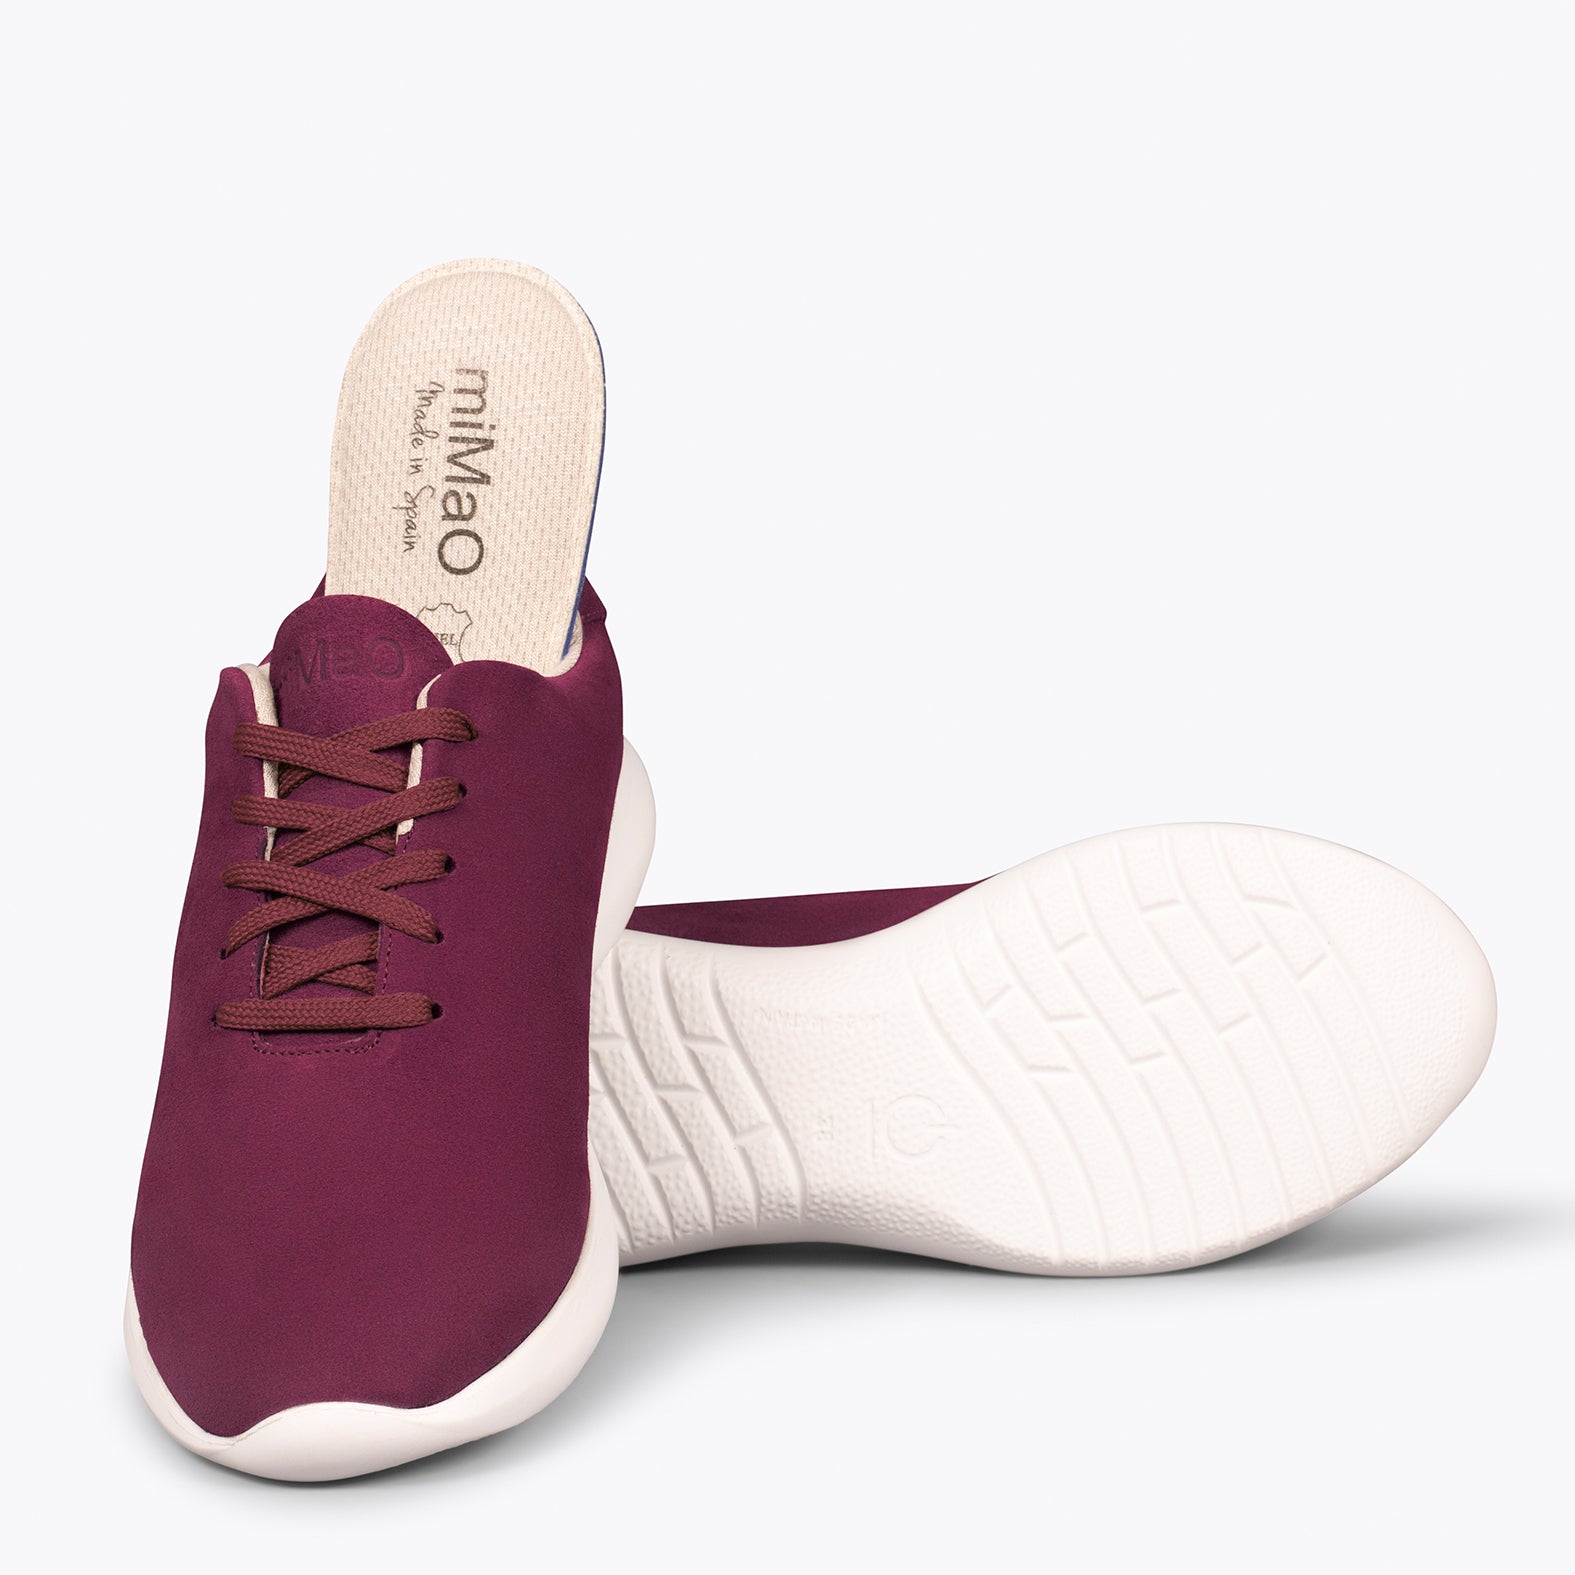 WALK – Chaussures confortables pour femme BORDEAUX